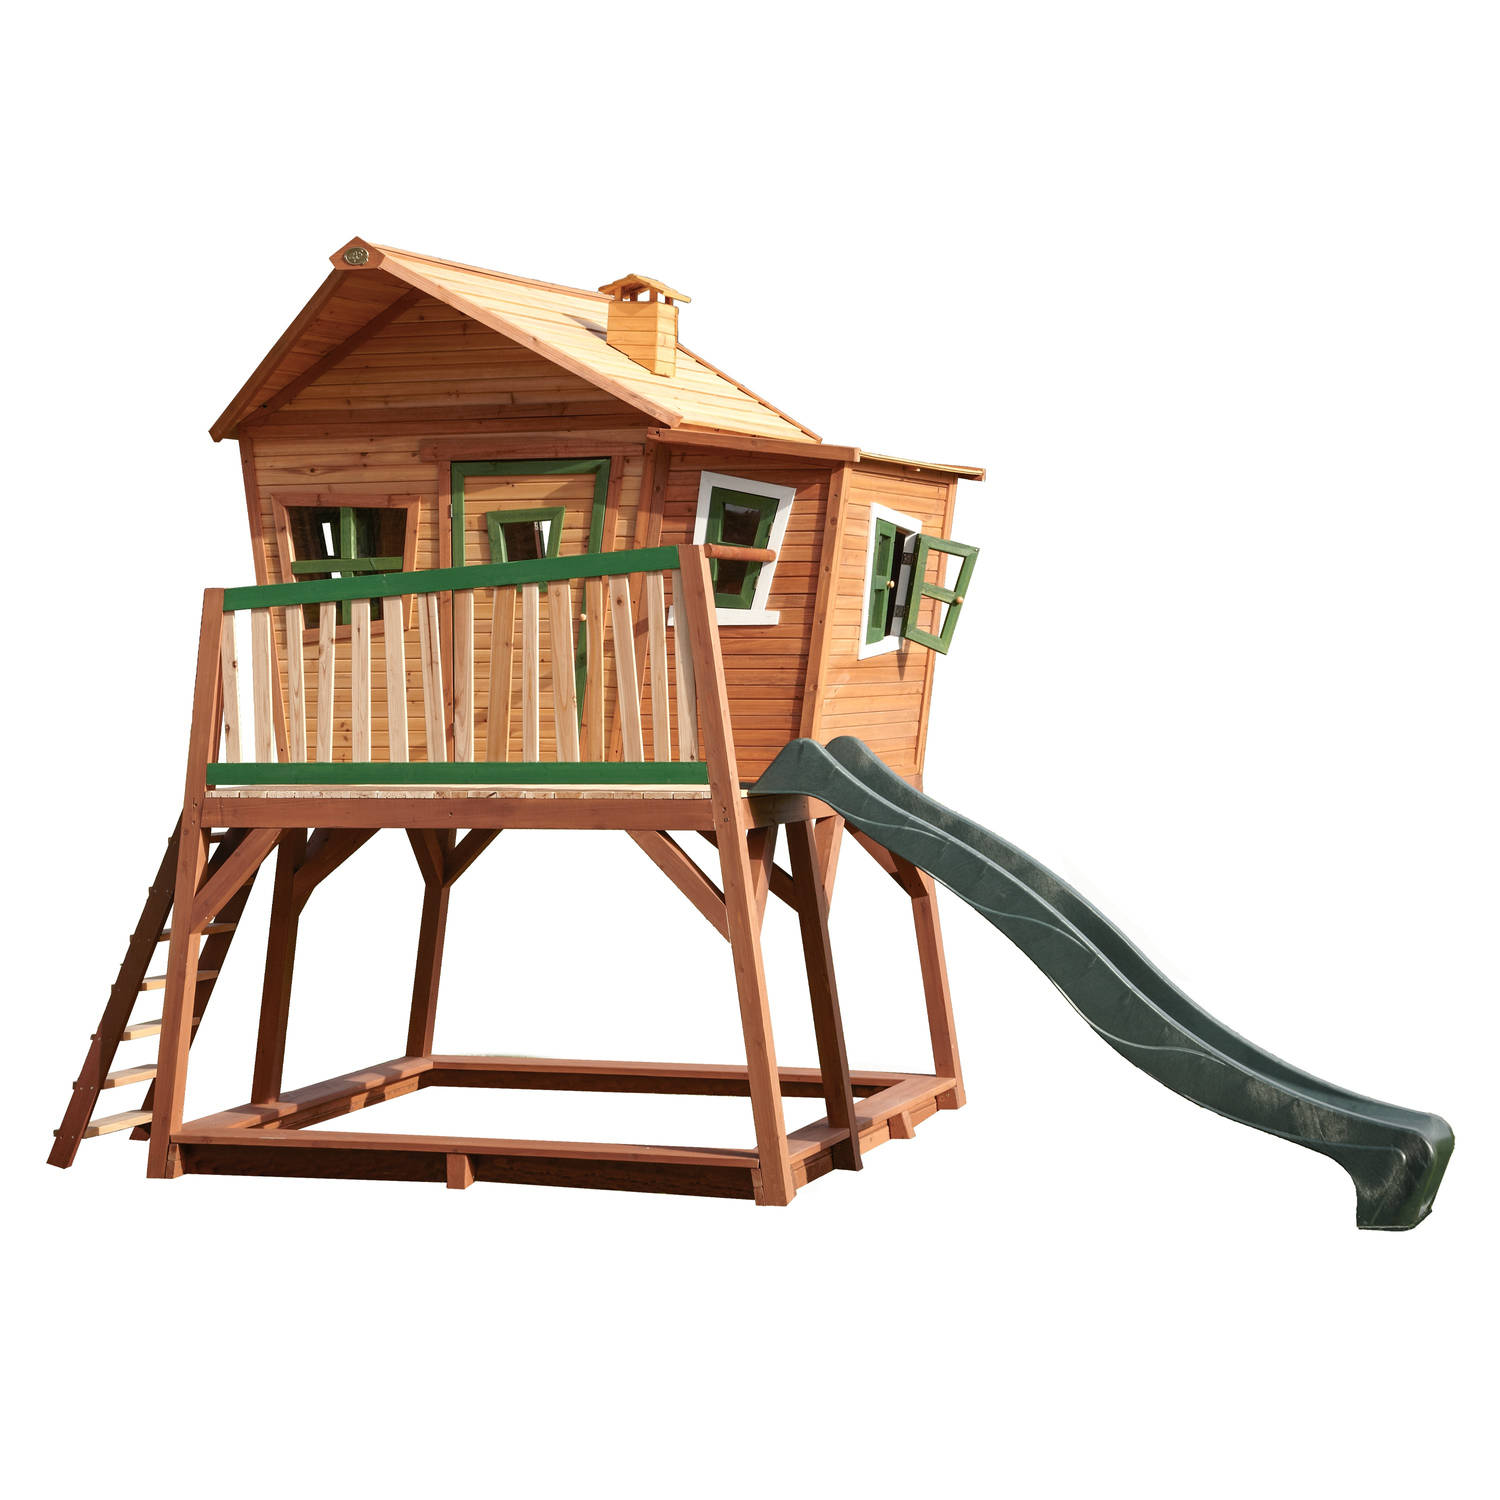 AXI Max Speelhuis in Bruin/Groen - Met Verdieping, Zandbak en Groene Glijbaan - Speelhuisje voor de tuin / buiten - FSC hout - Speeltoestel voor kinderen